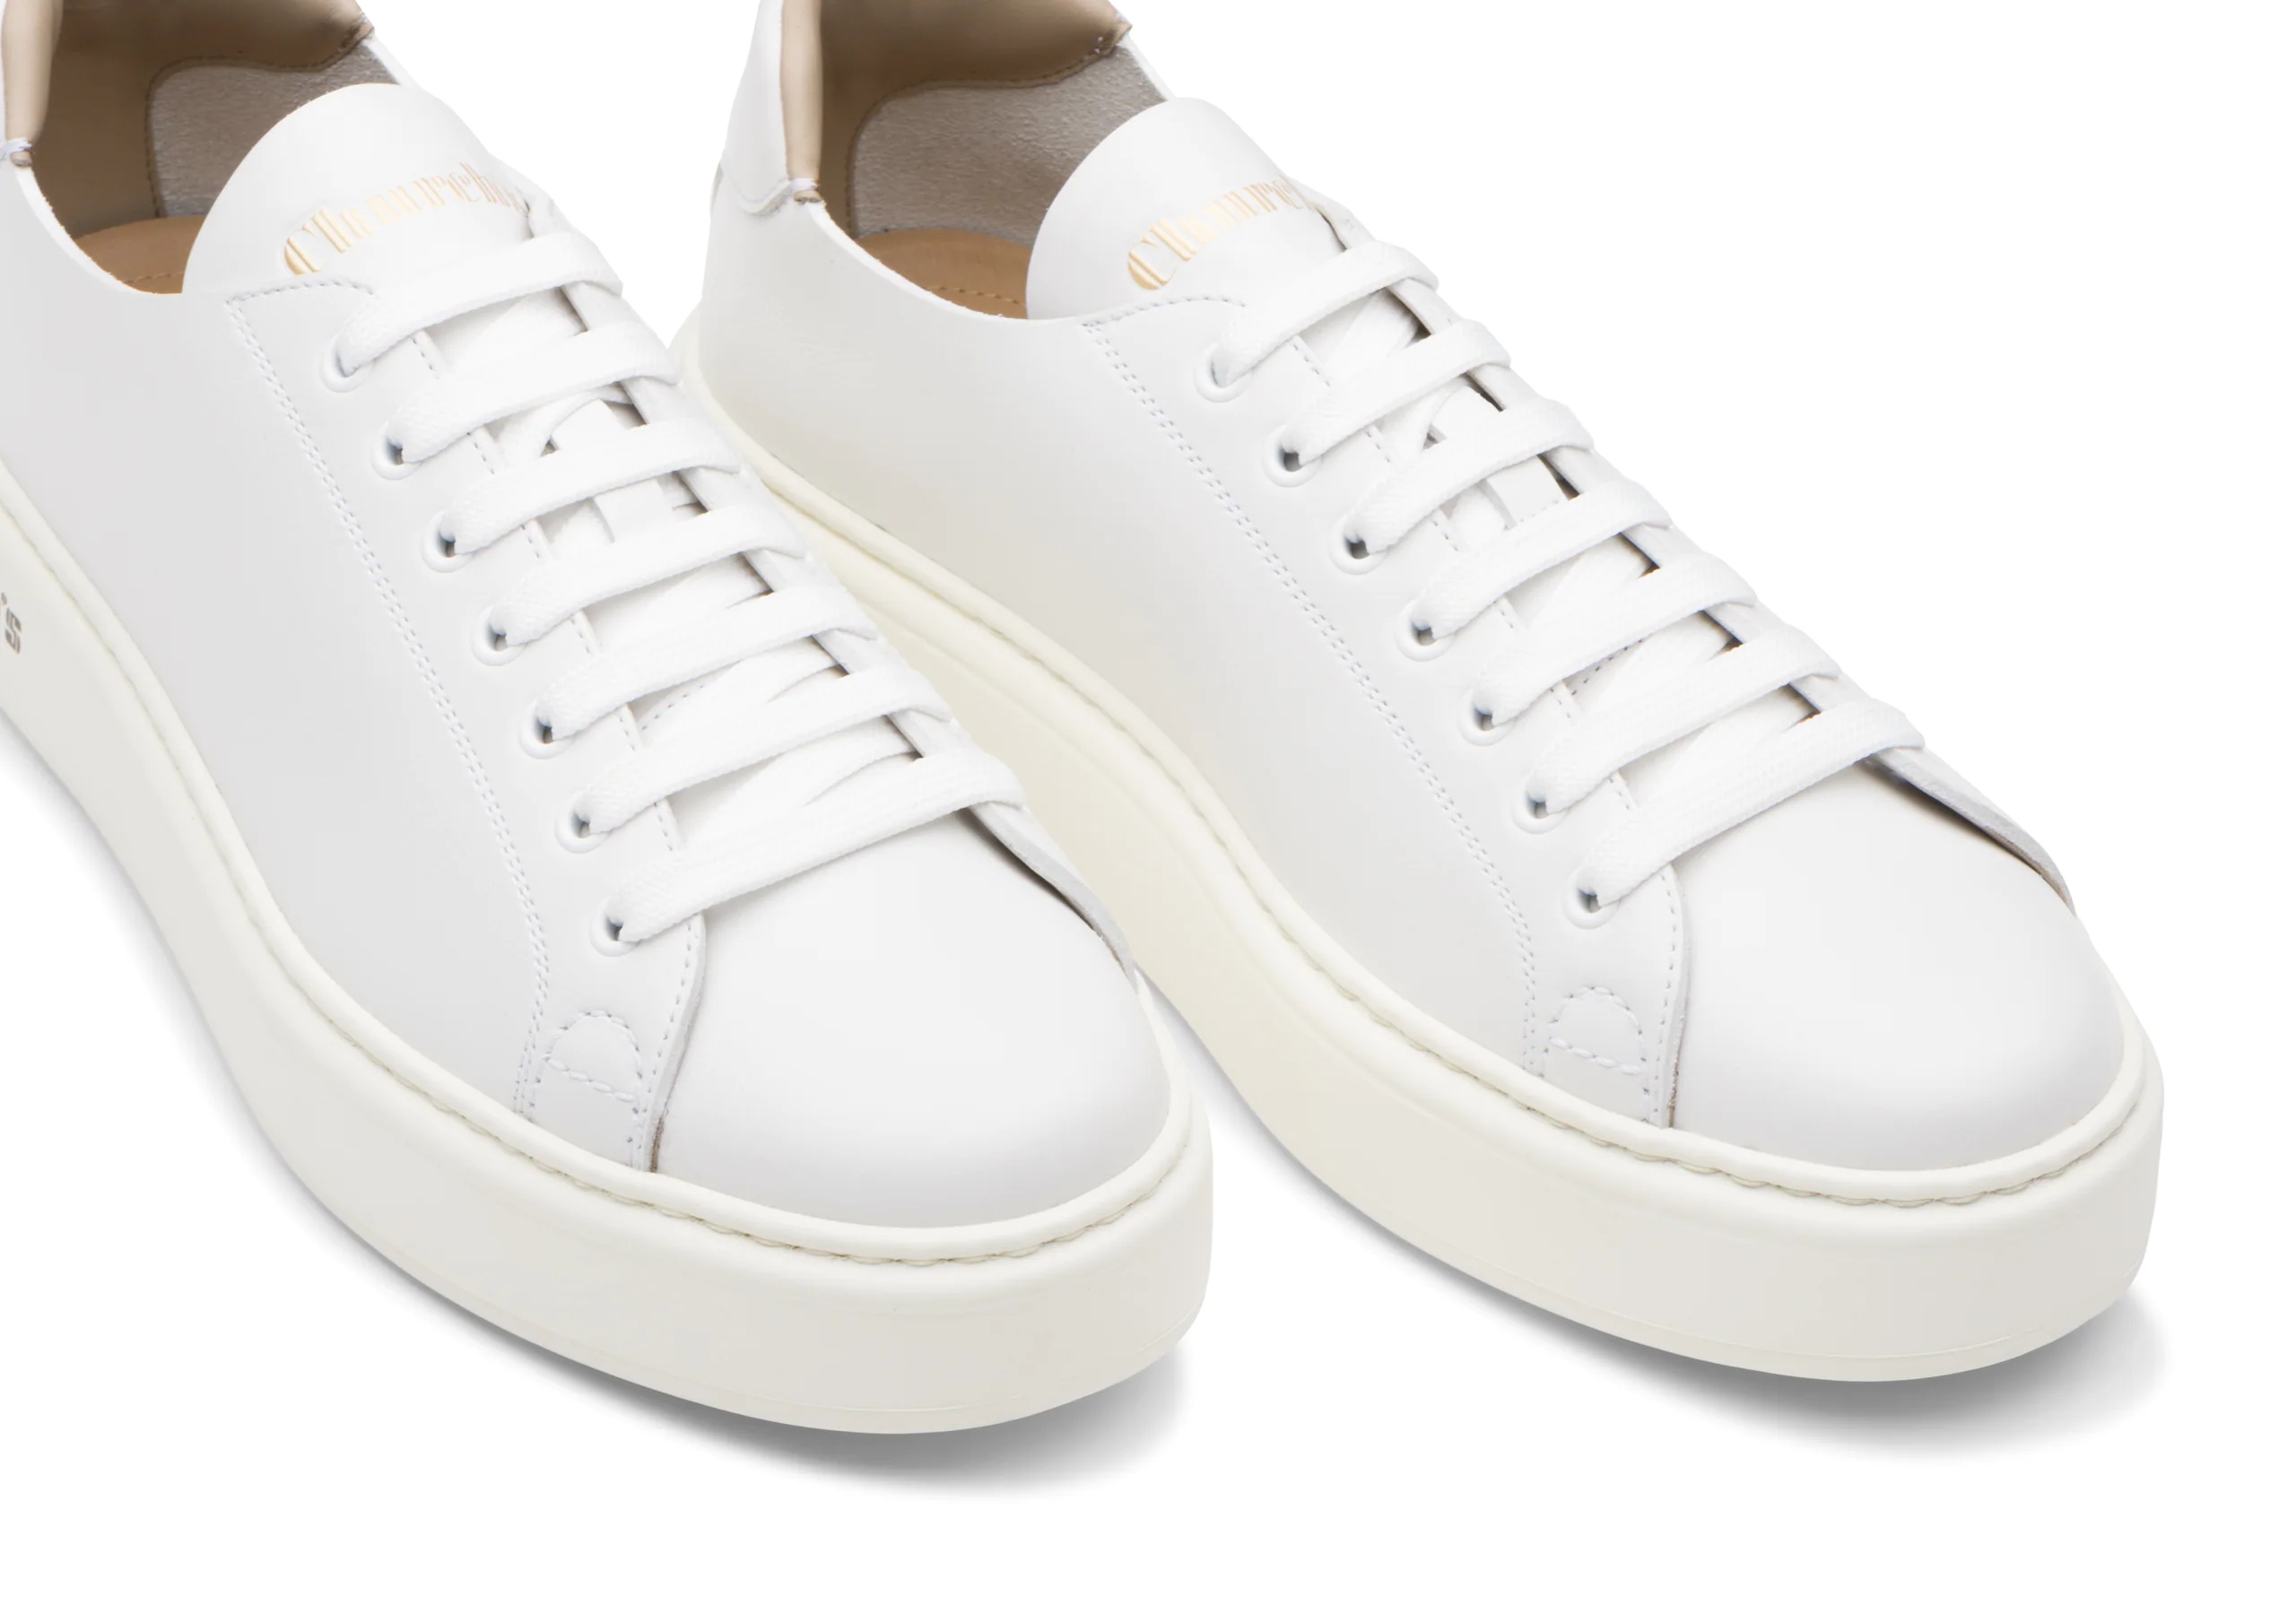 Mach 1
Monteria Calf Classic Sneaker White - 4